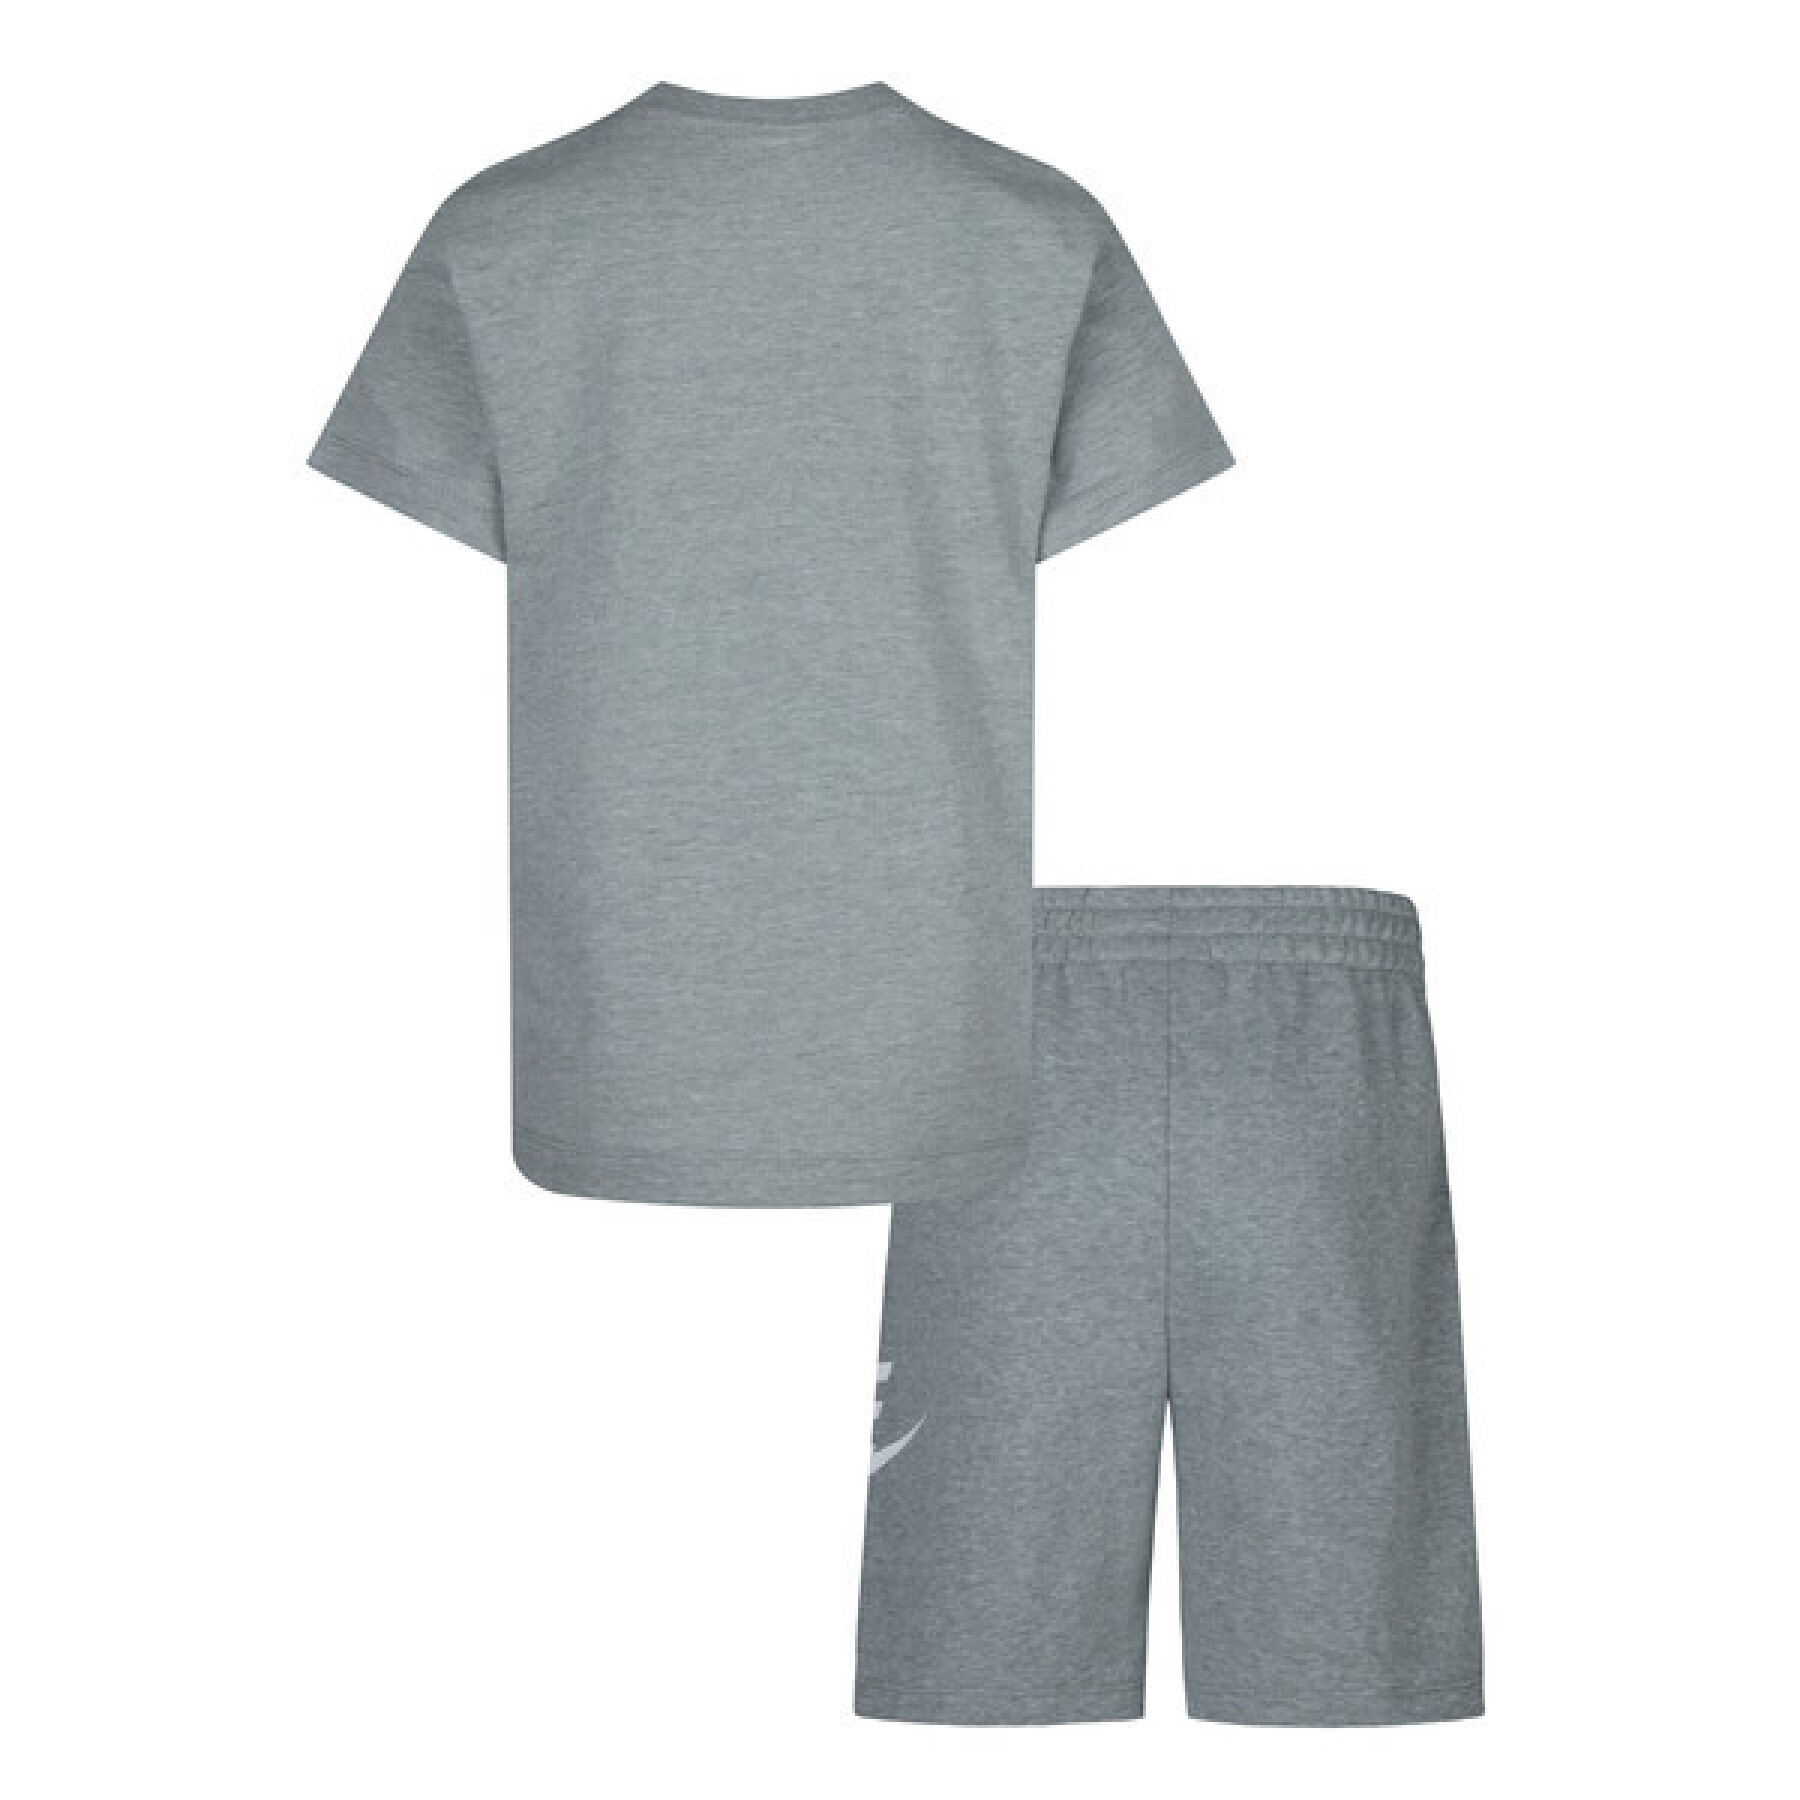 Conjunto de camiseta y pantalón corto para bebé Nike Club